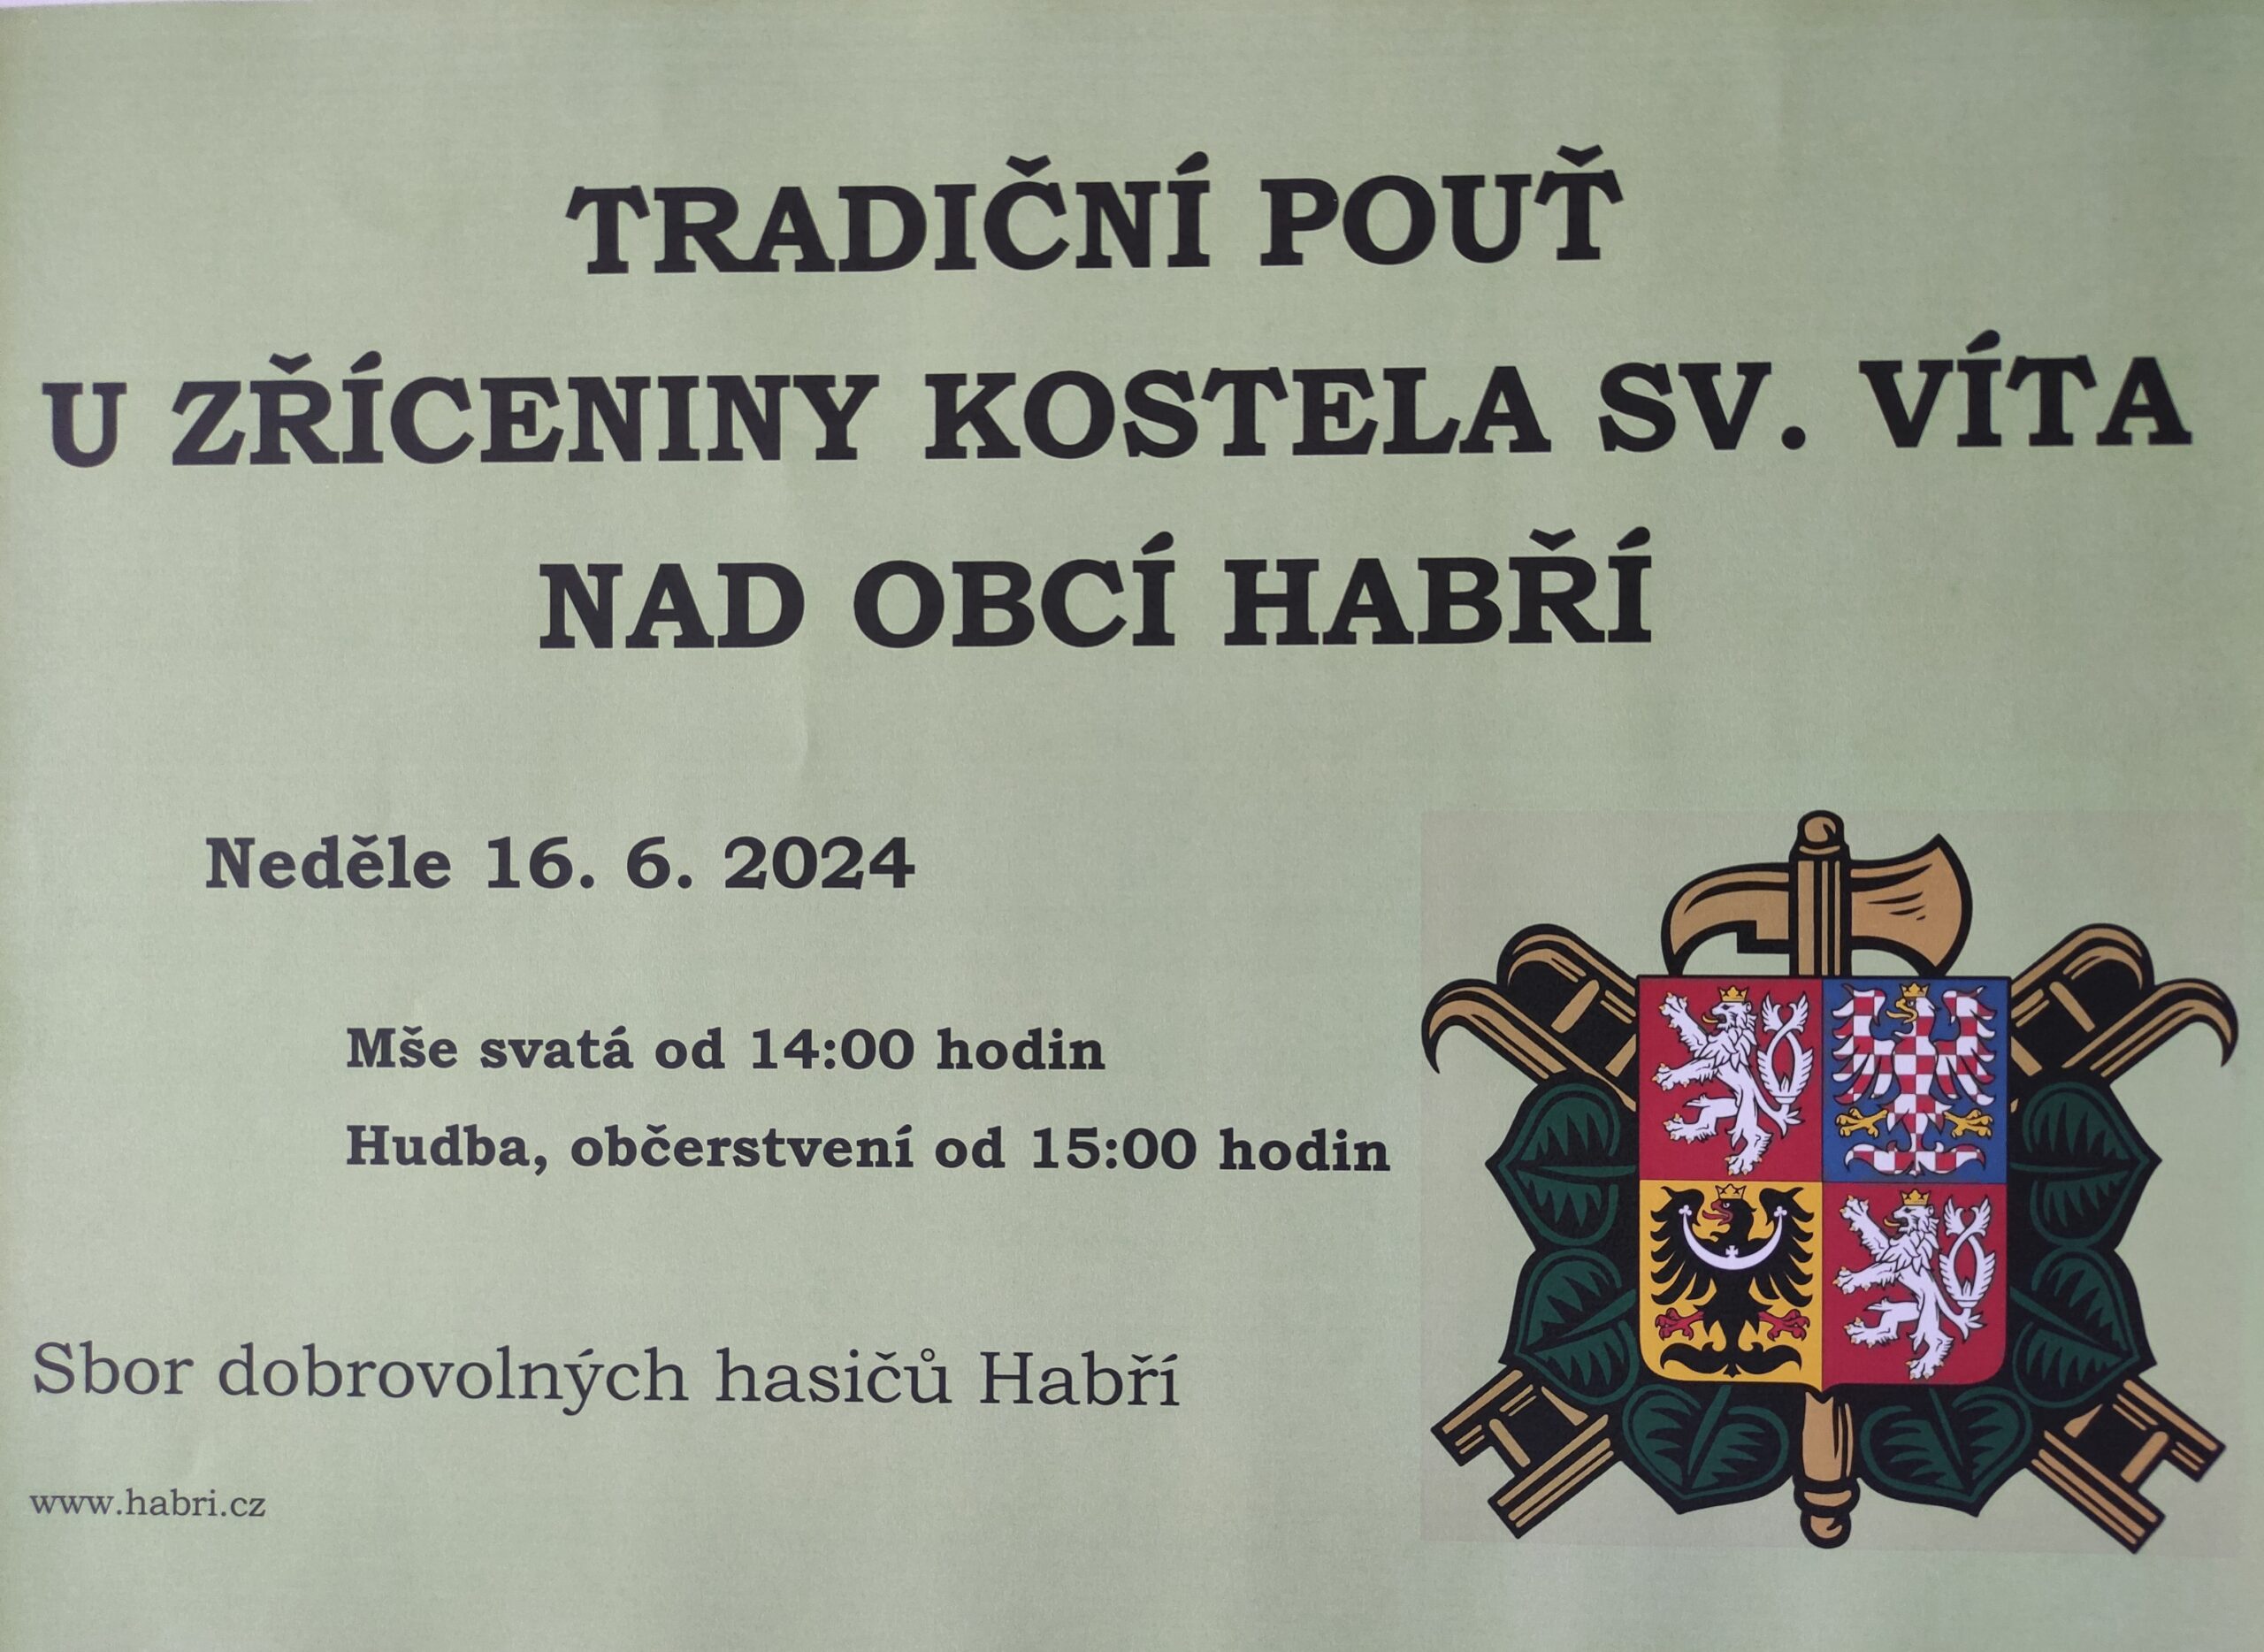 Dne 16. 6. 2024 od 14:00 se koná tradiční pouť u zříceniny kostela sv.Víta v Habří. Mše svatá, občerstvení, hudba zajištěno.